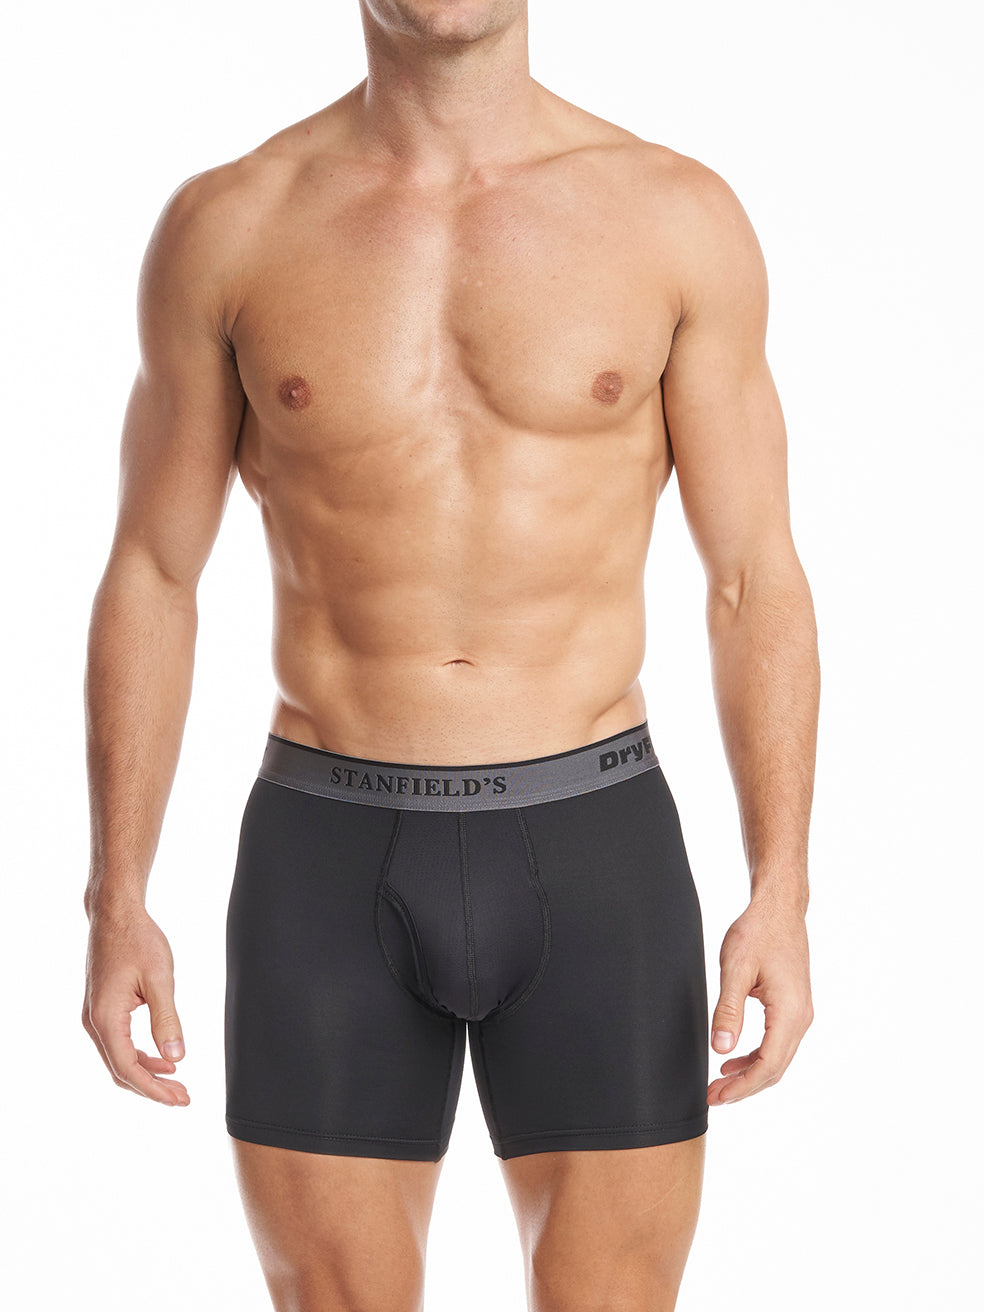 UFM Underwear for Men wholesale products